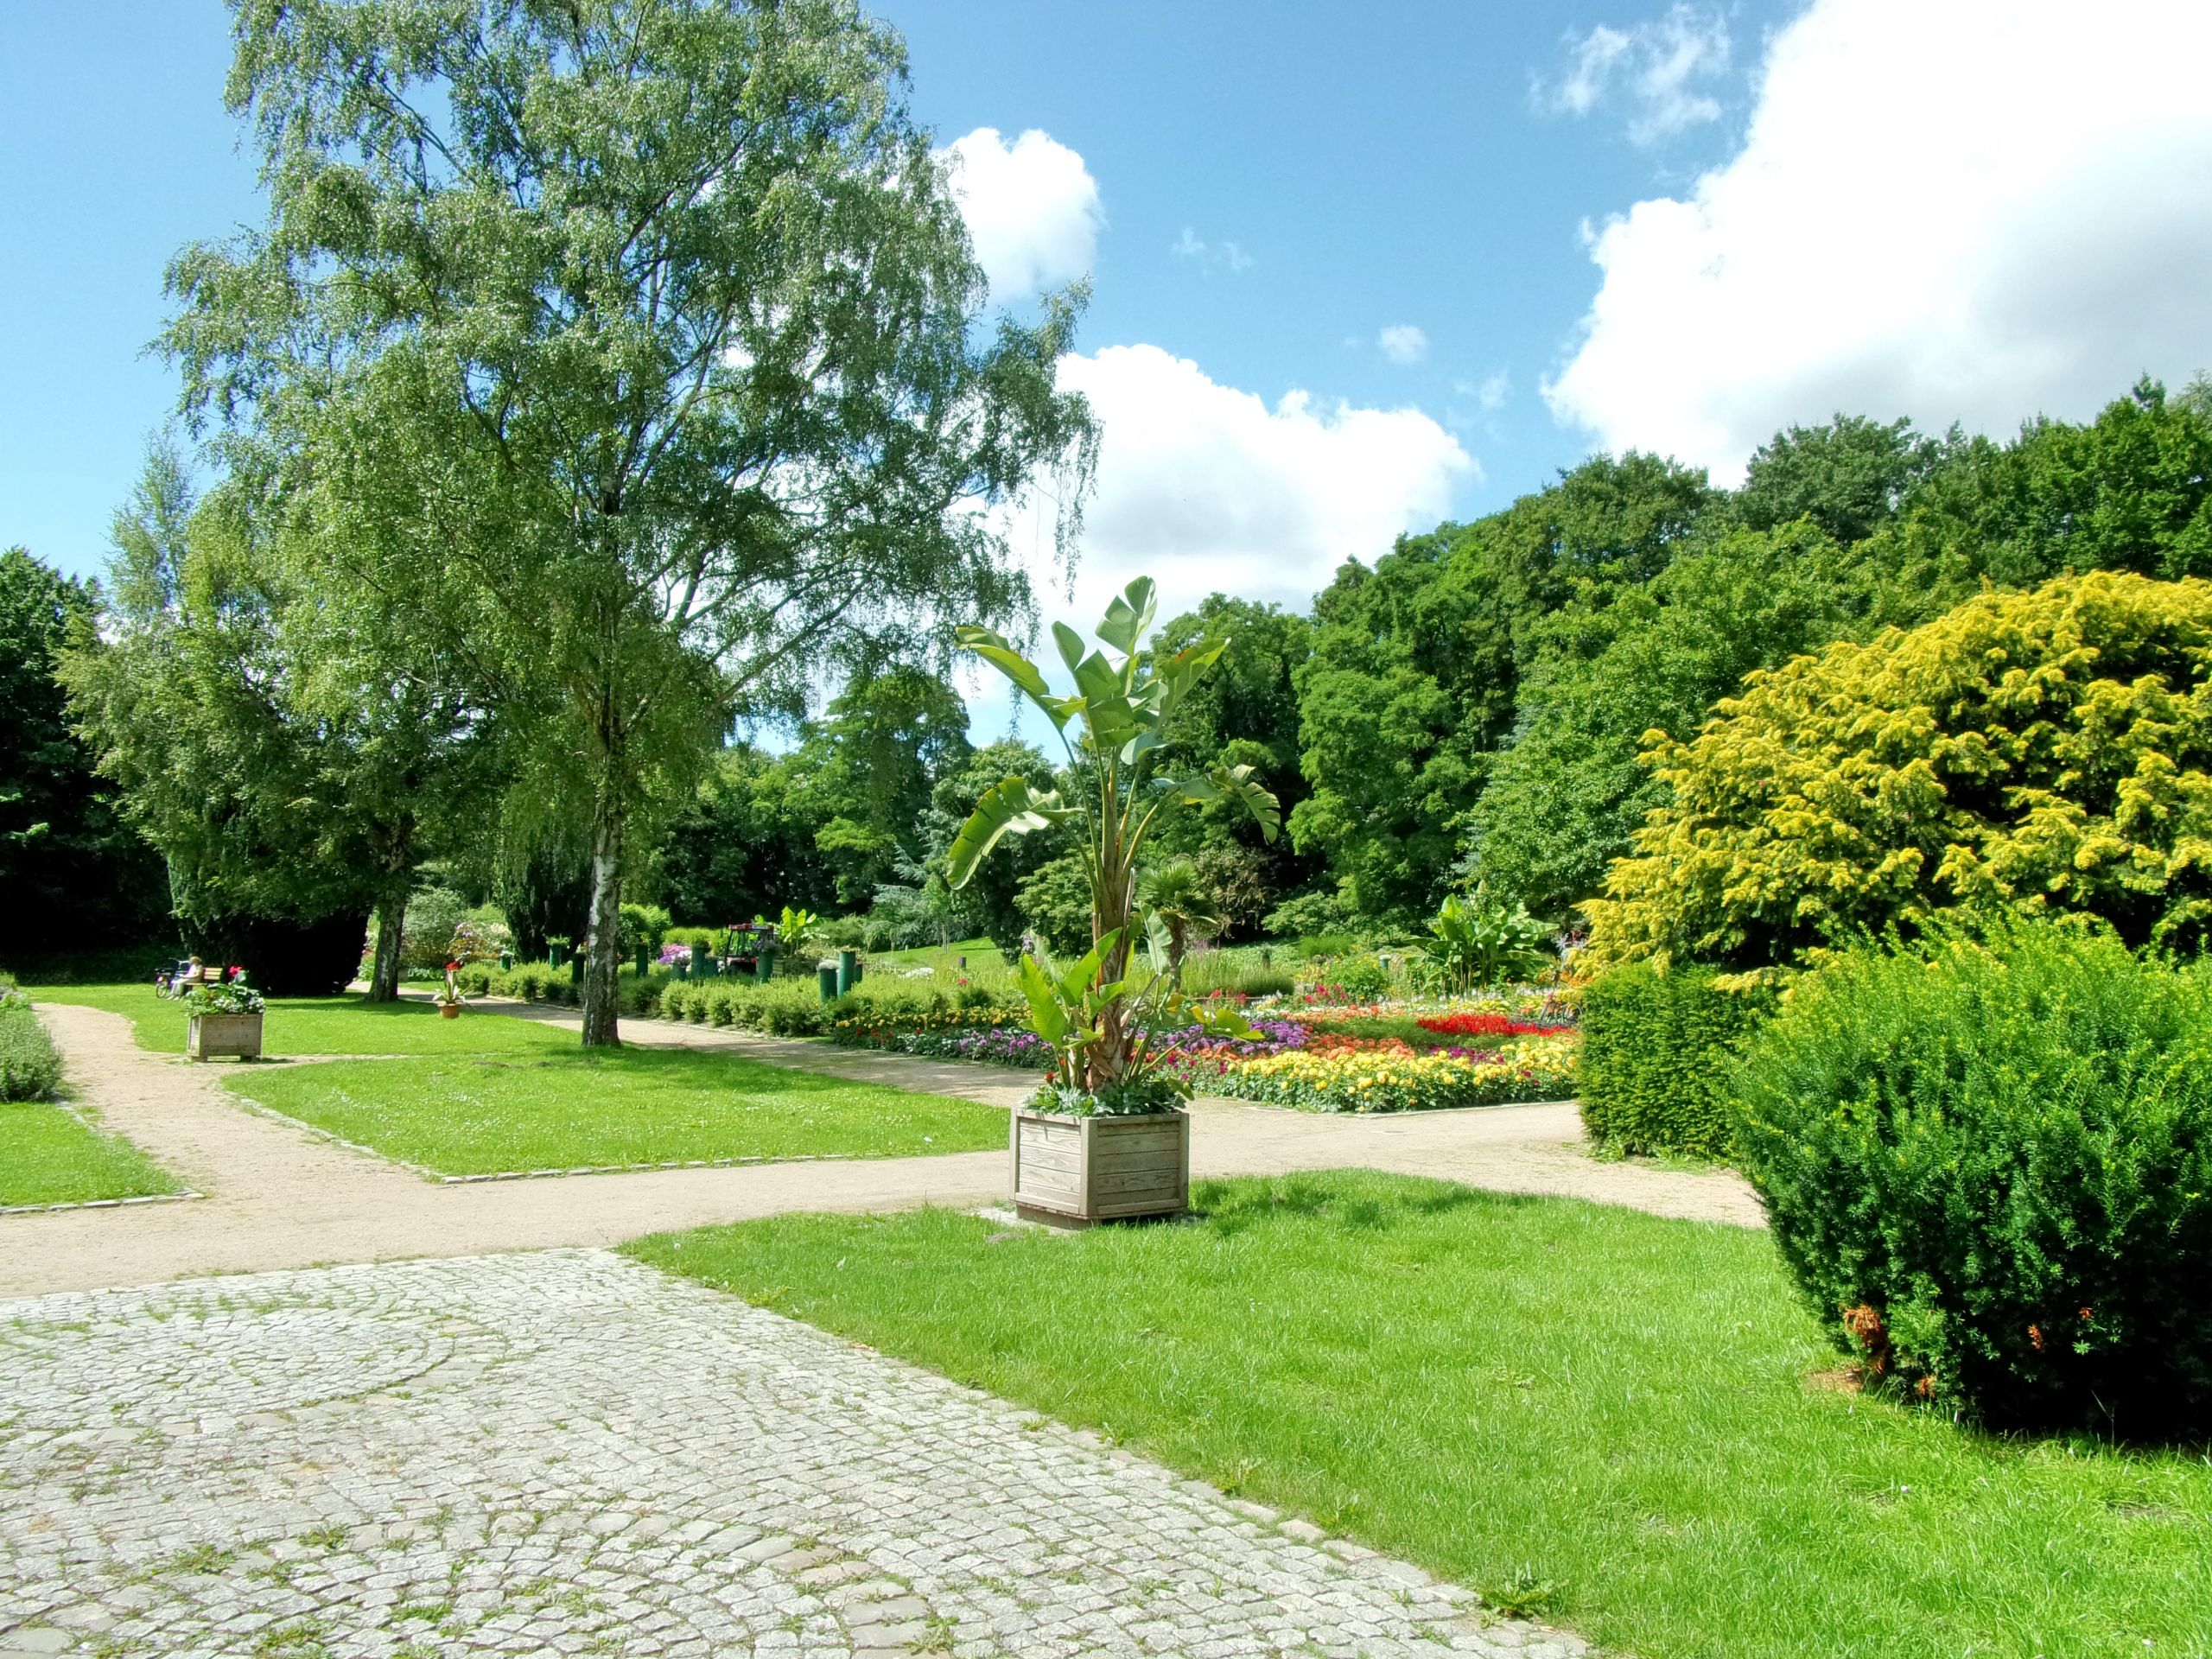 Hamburg Botanischer Garten Schön Botanischer sondergarten Wandsbek –